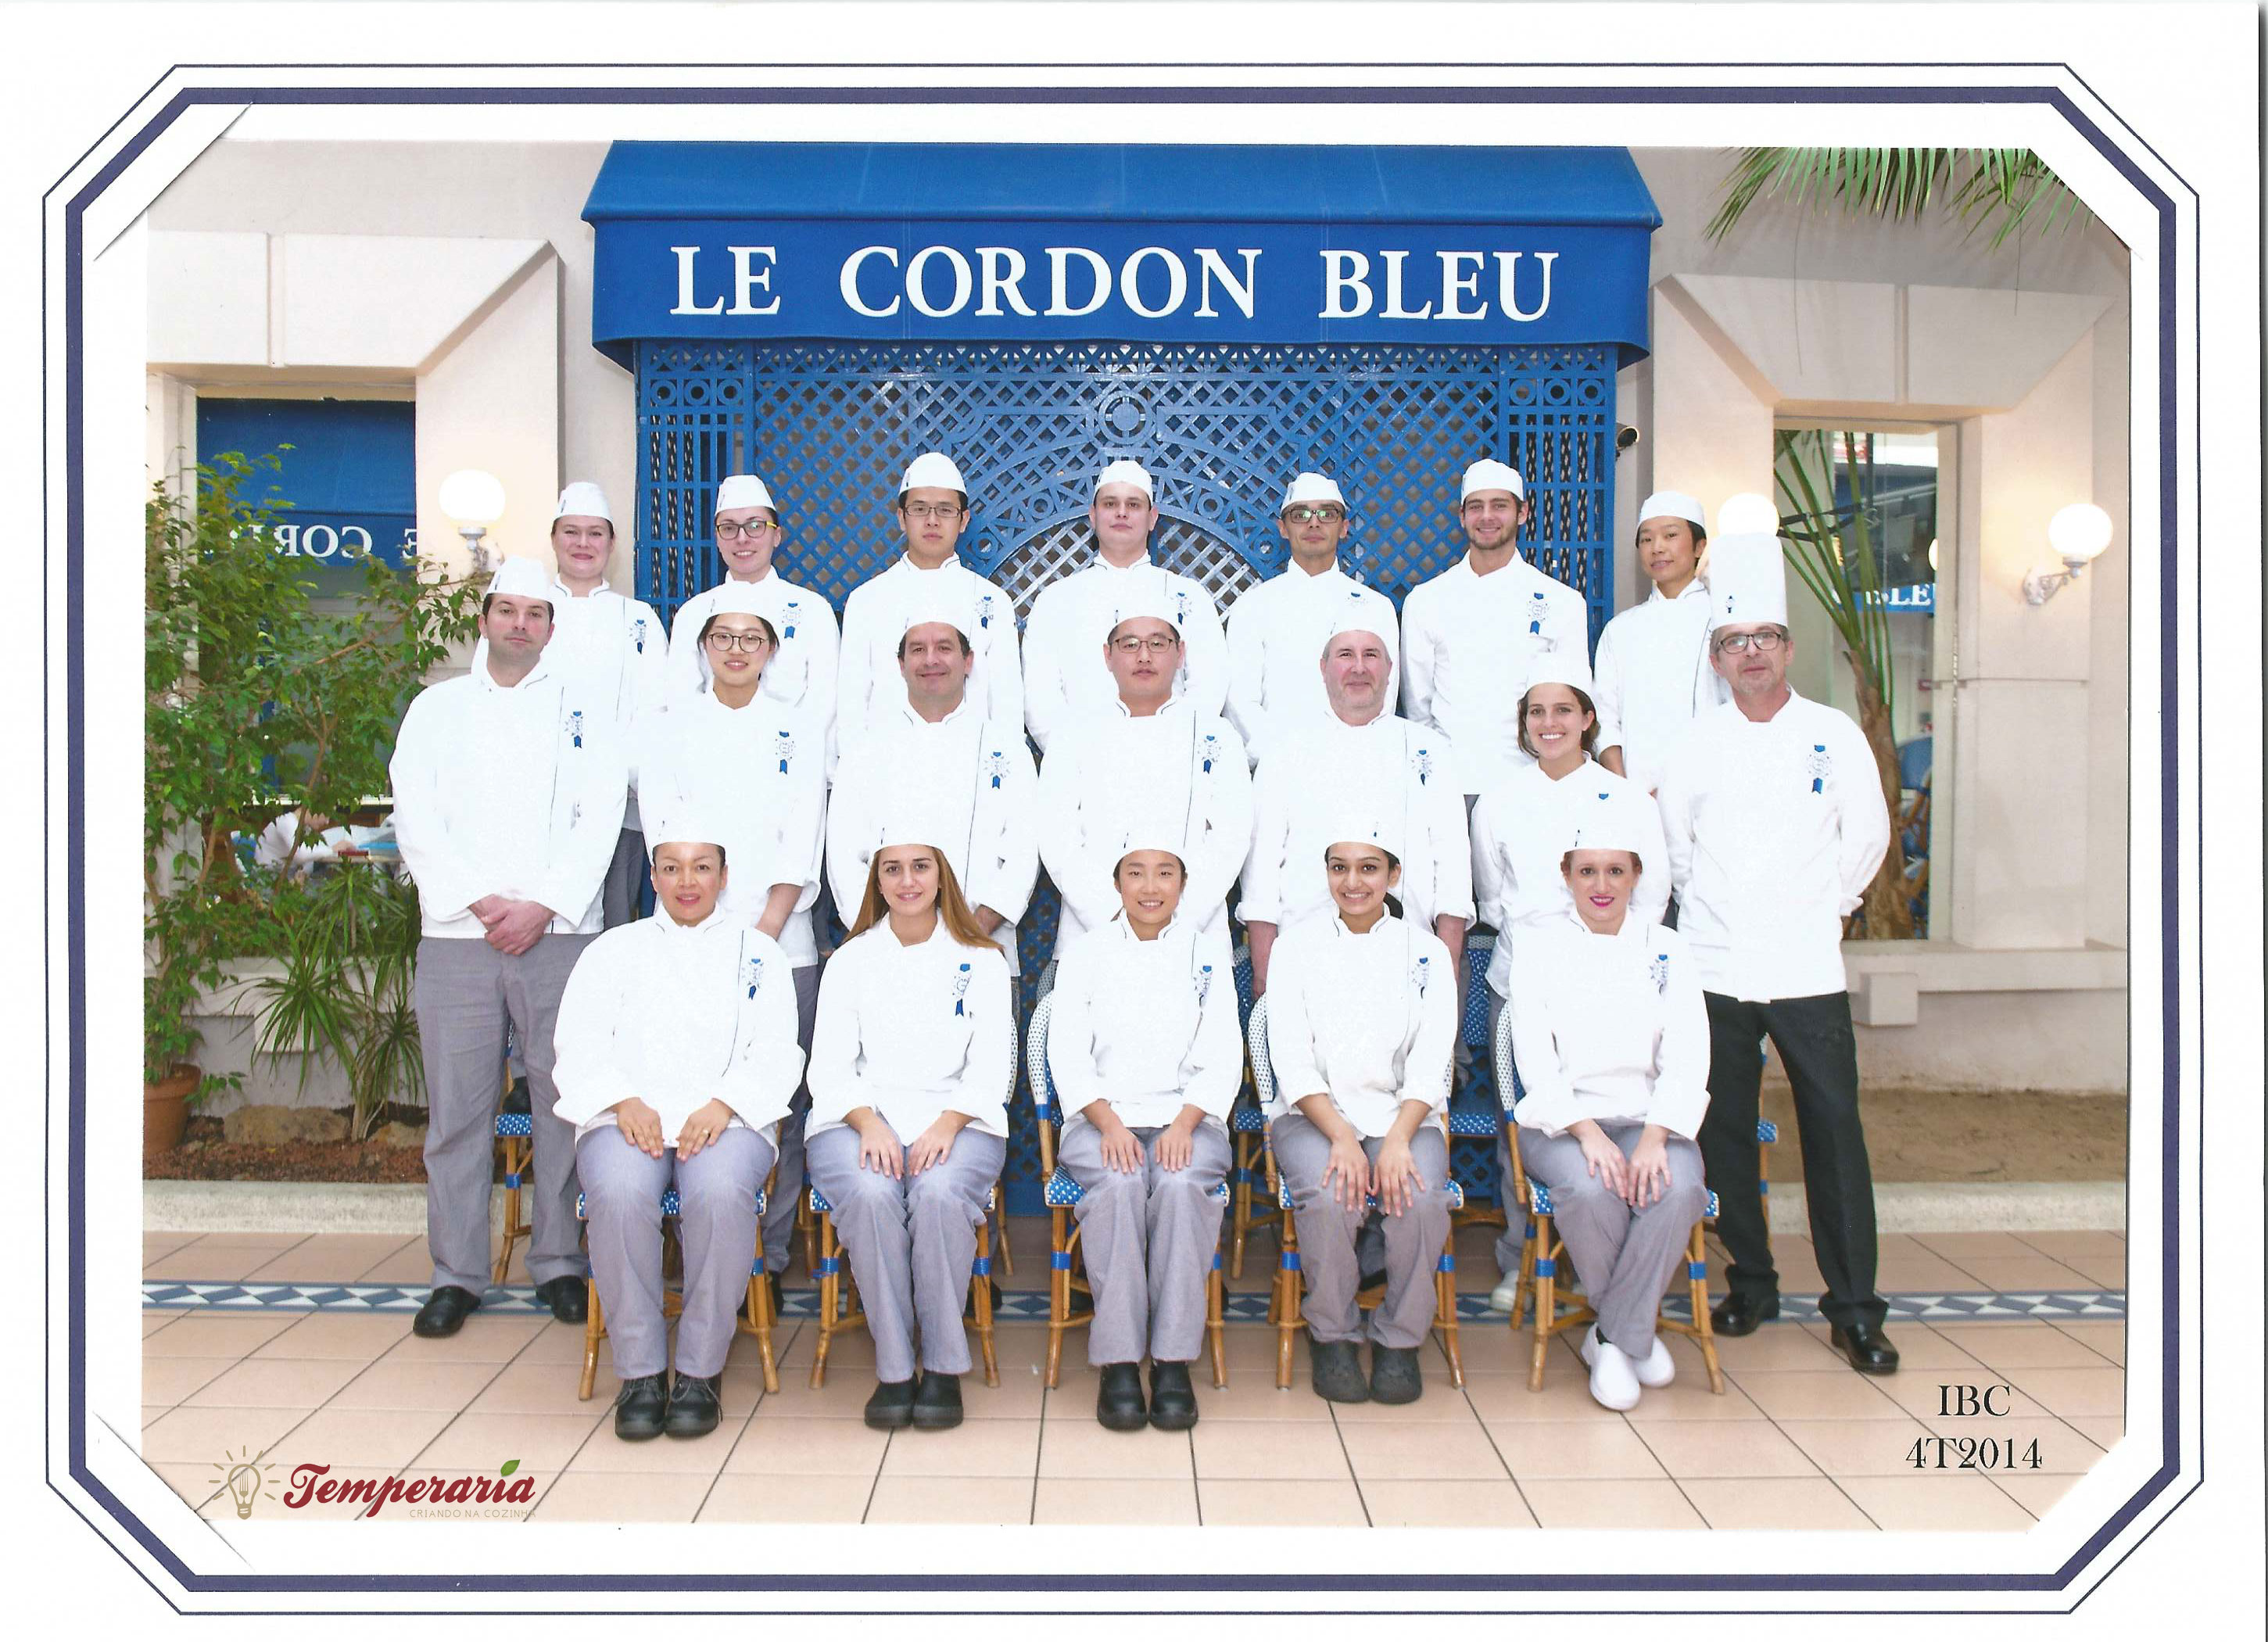 Formatura do curso de Cuisine na Le Cordon Bleu Paris